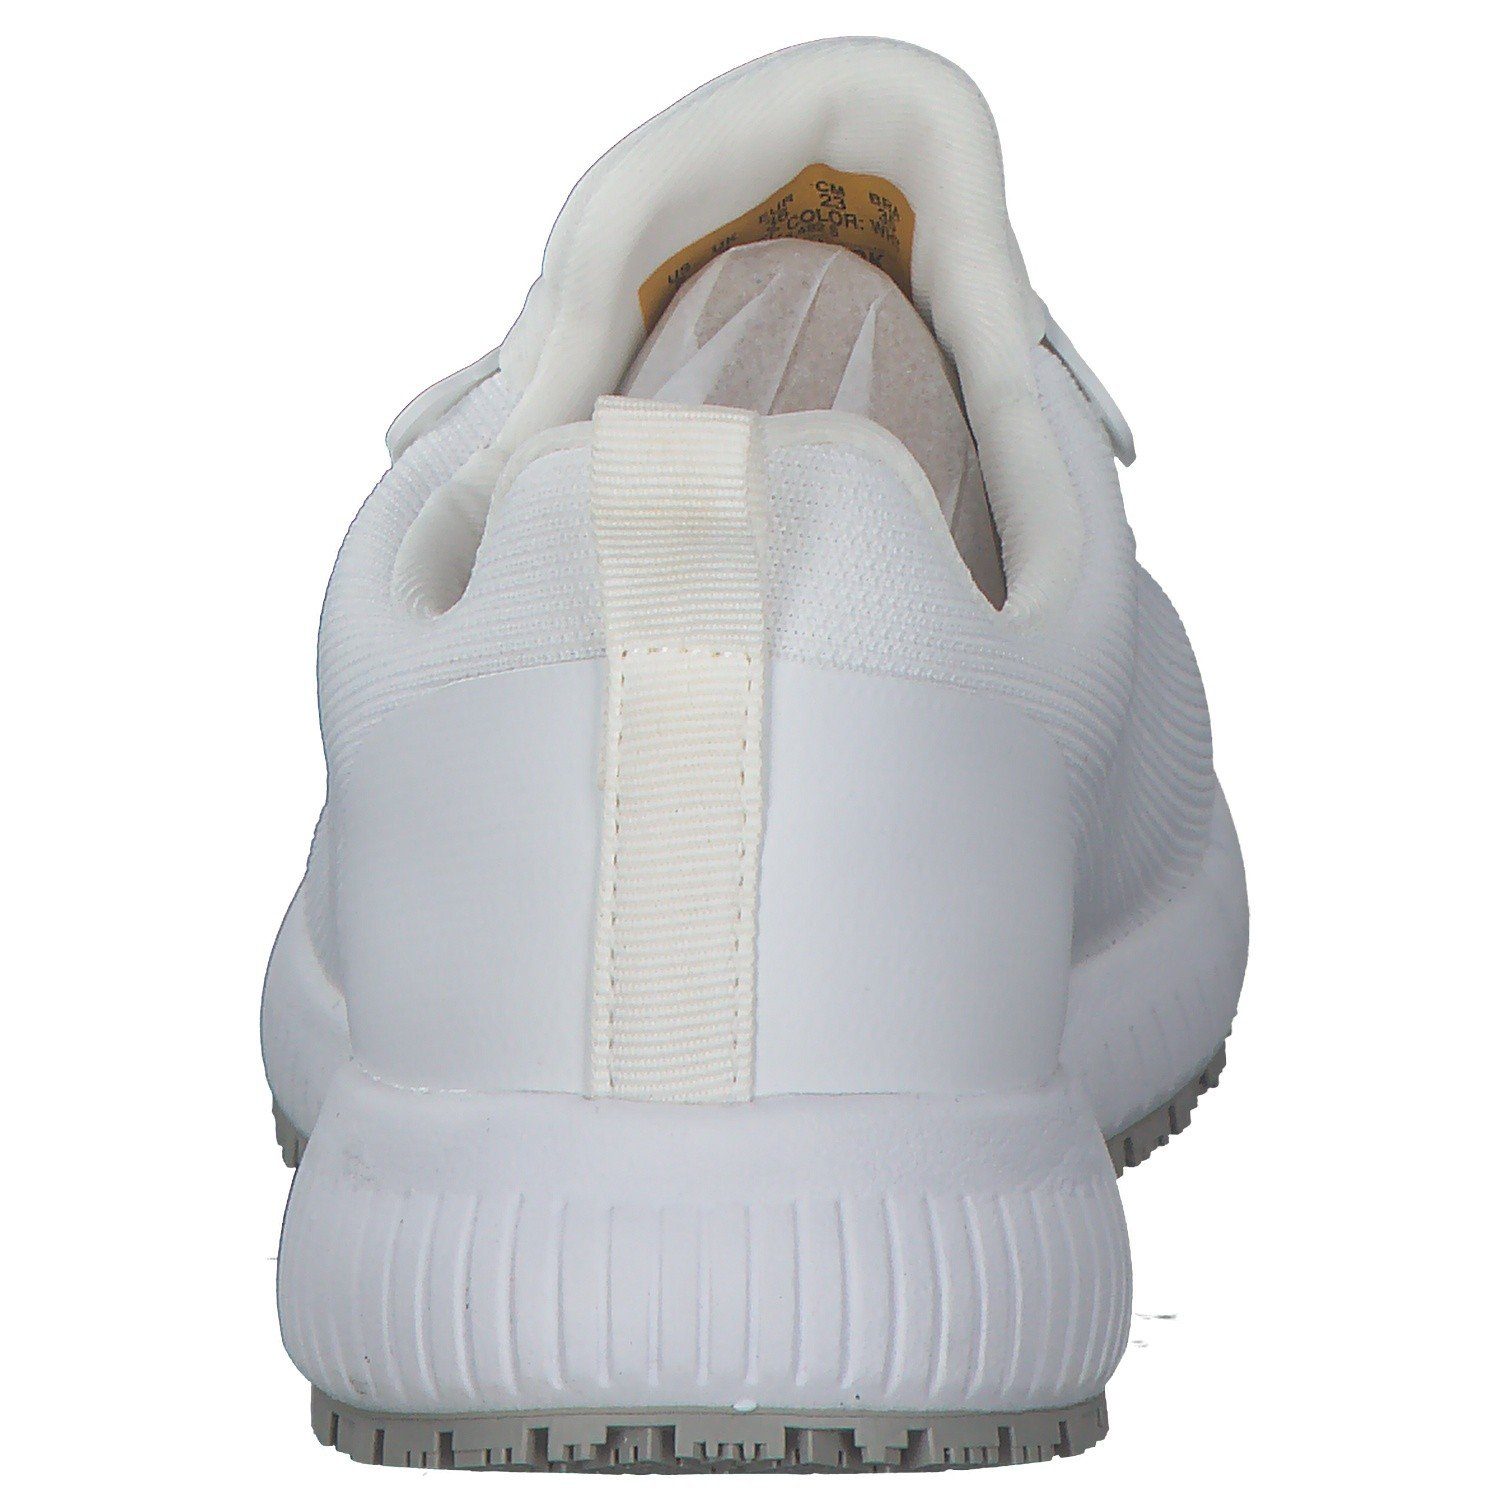 Sneaker Skechers 77222 White WHT (20202927) Skechers